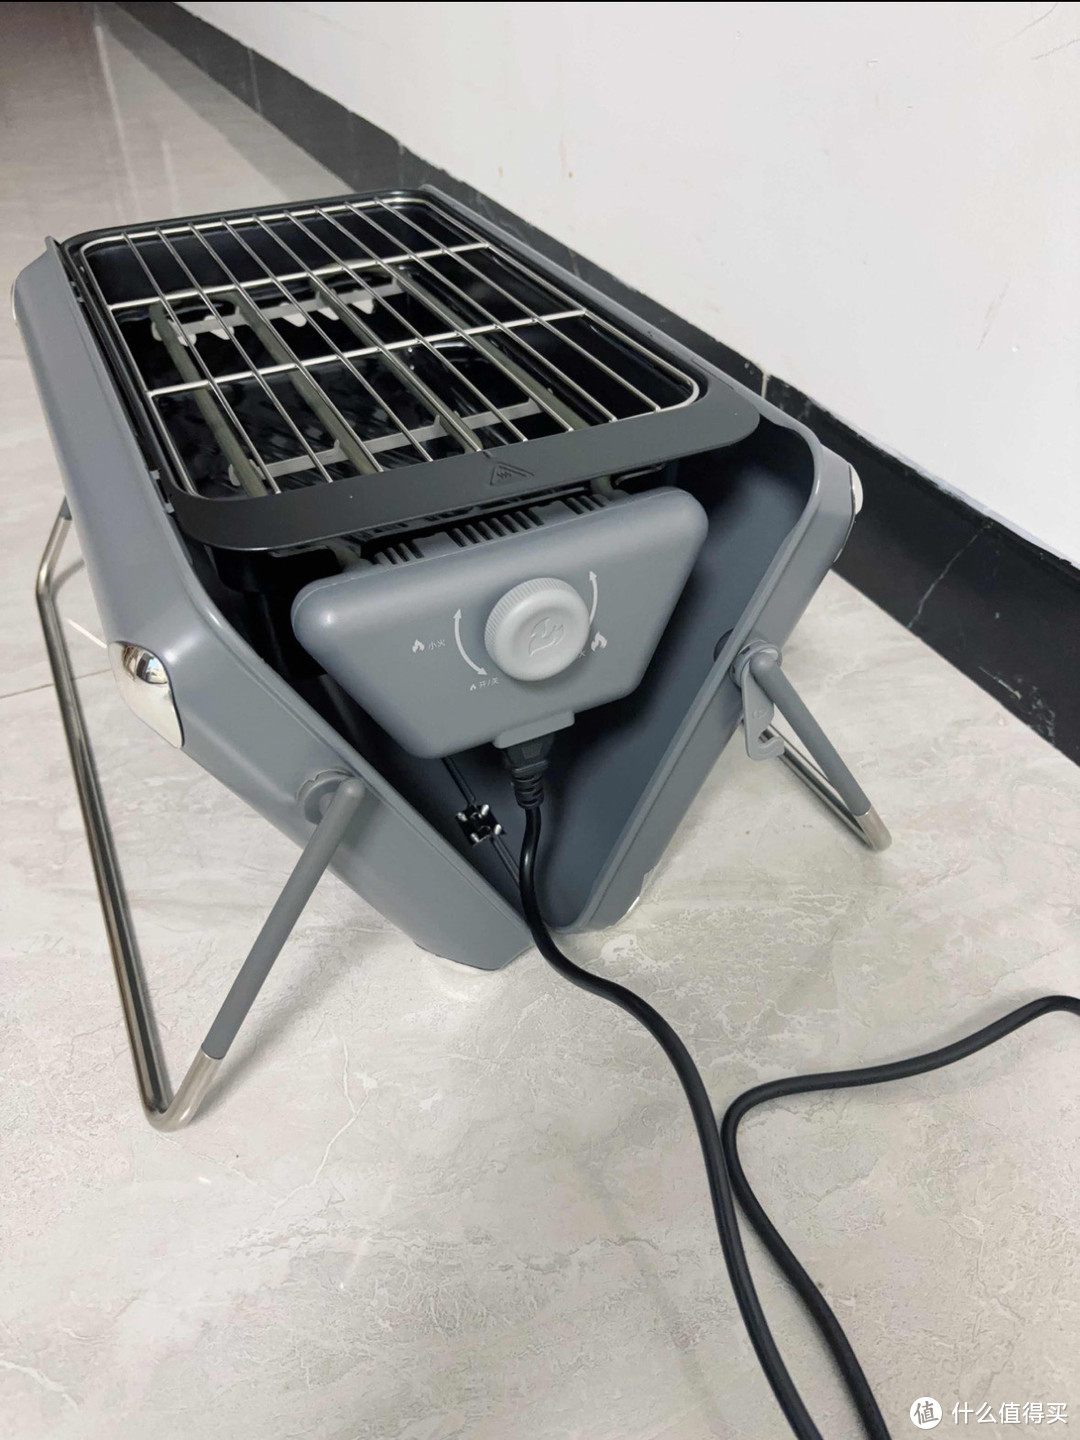 炭·电·气组合，只需一个烧烤炉，就能分分钟实现烧烤自由